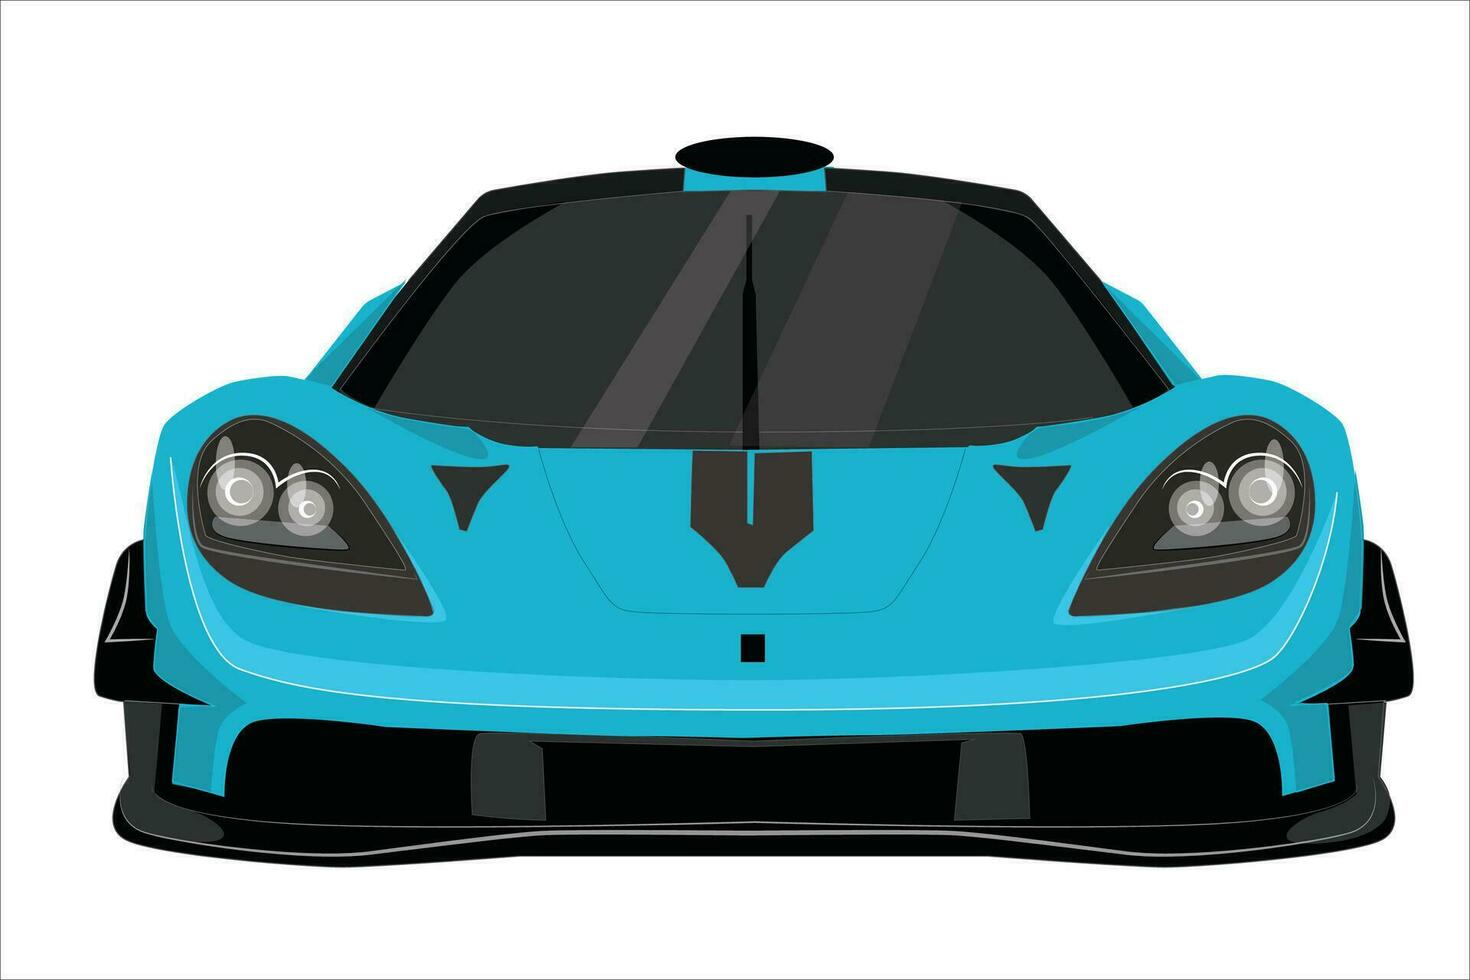 azul Esportes carro, frente visualizar. azul 3d corrida carro frente Visão vetor ilustração - Esportes veículo dentro realista estilo, isolado em branco fundo.